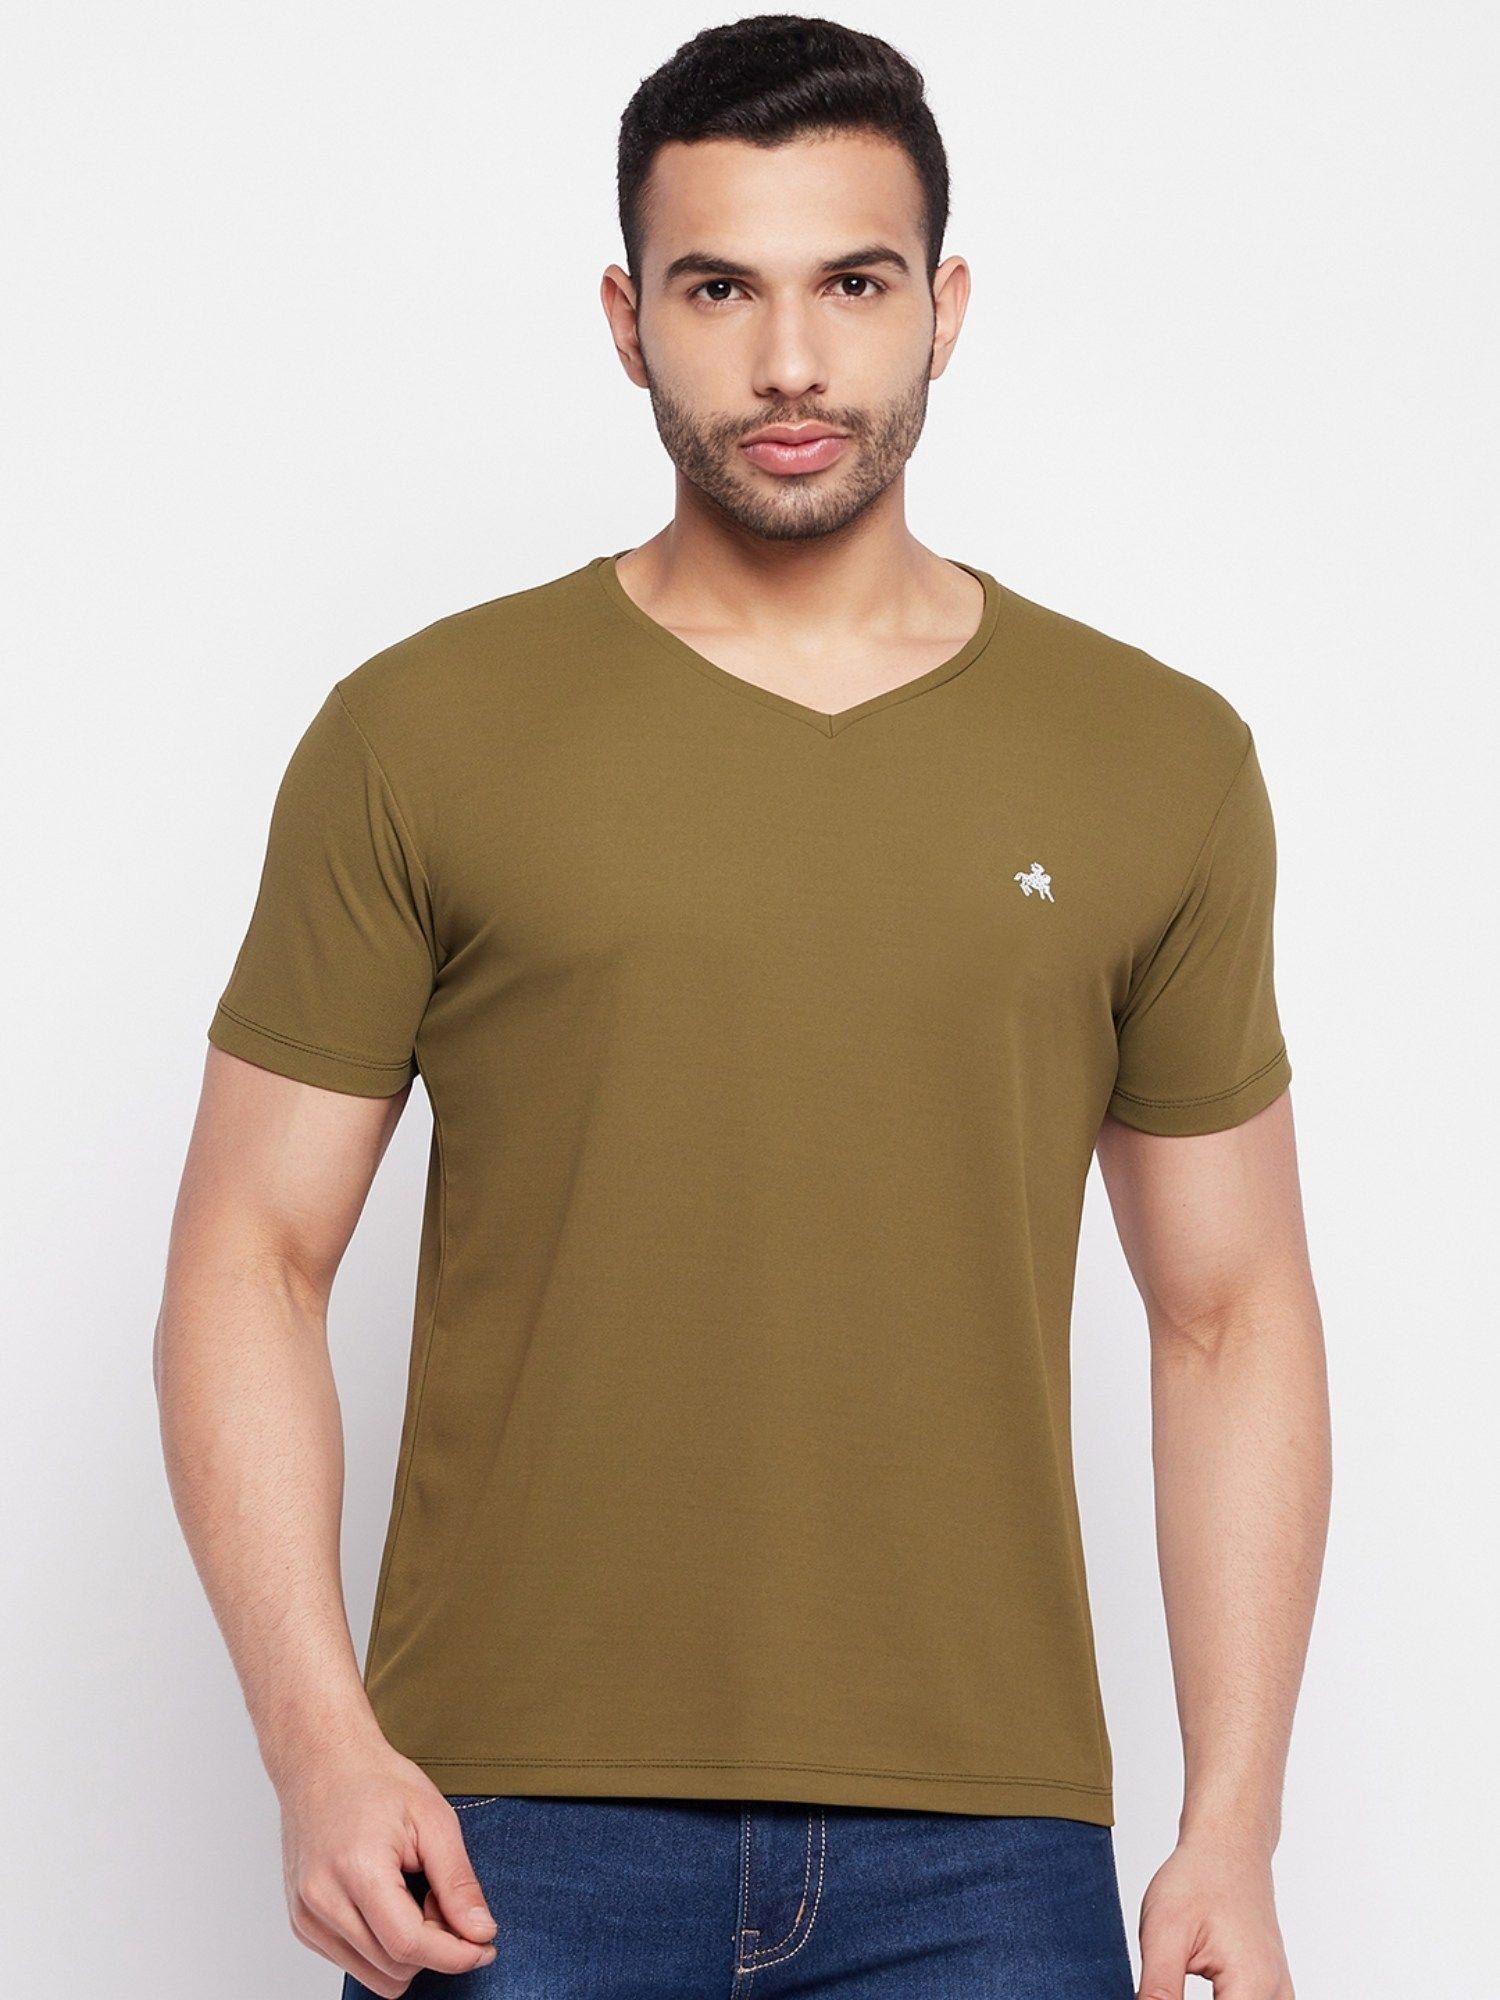 men's olive printed v-neck t-shirt